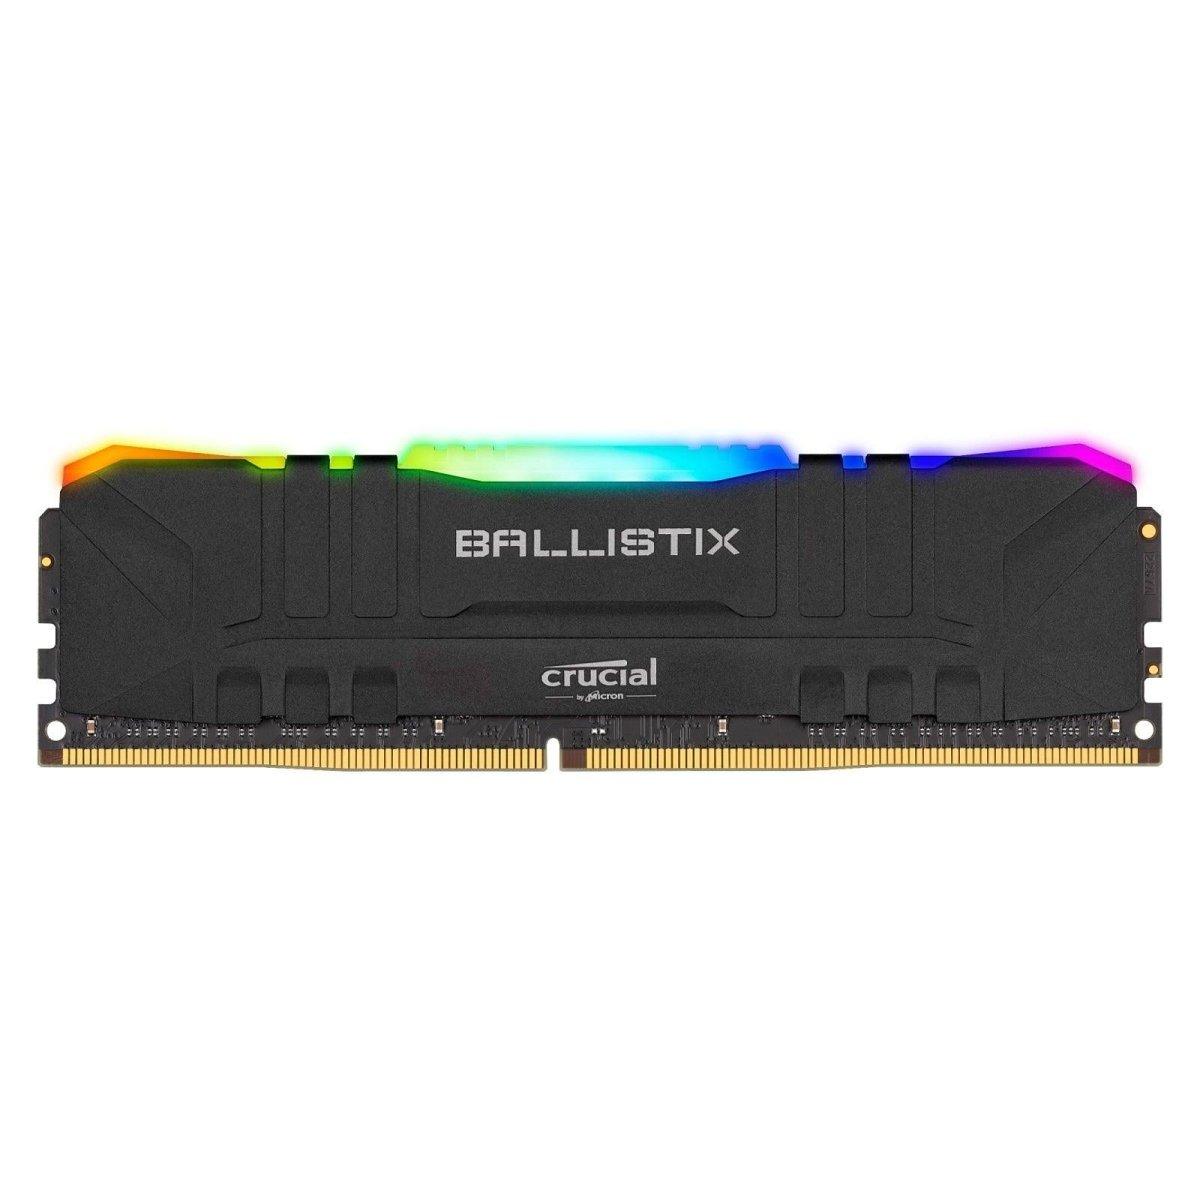 Crucial Ballistix RGB black maroc 16 Go  DDR4 3200 MHz CL16 Noir Prix Barrette Memoire pas cher - smartmarket.ma